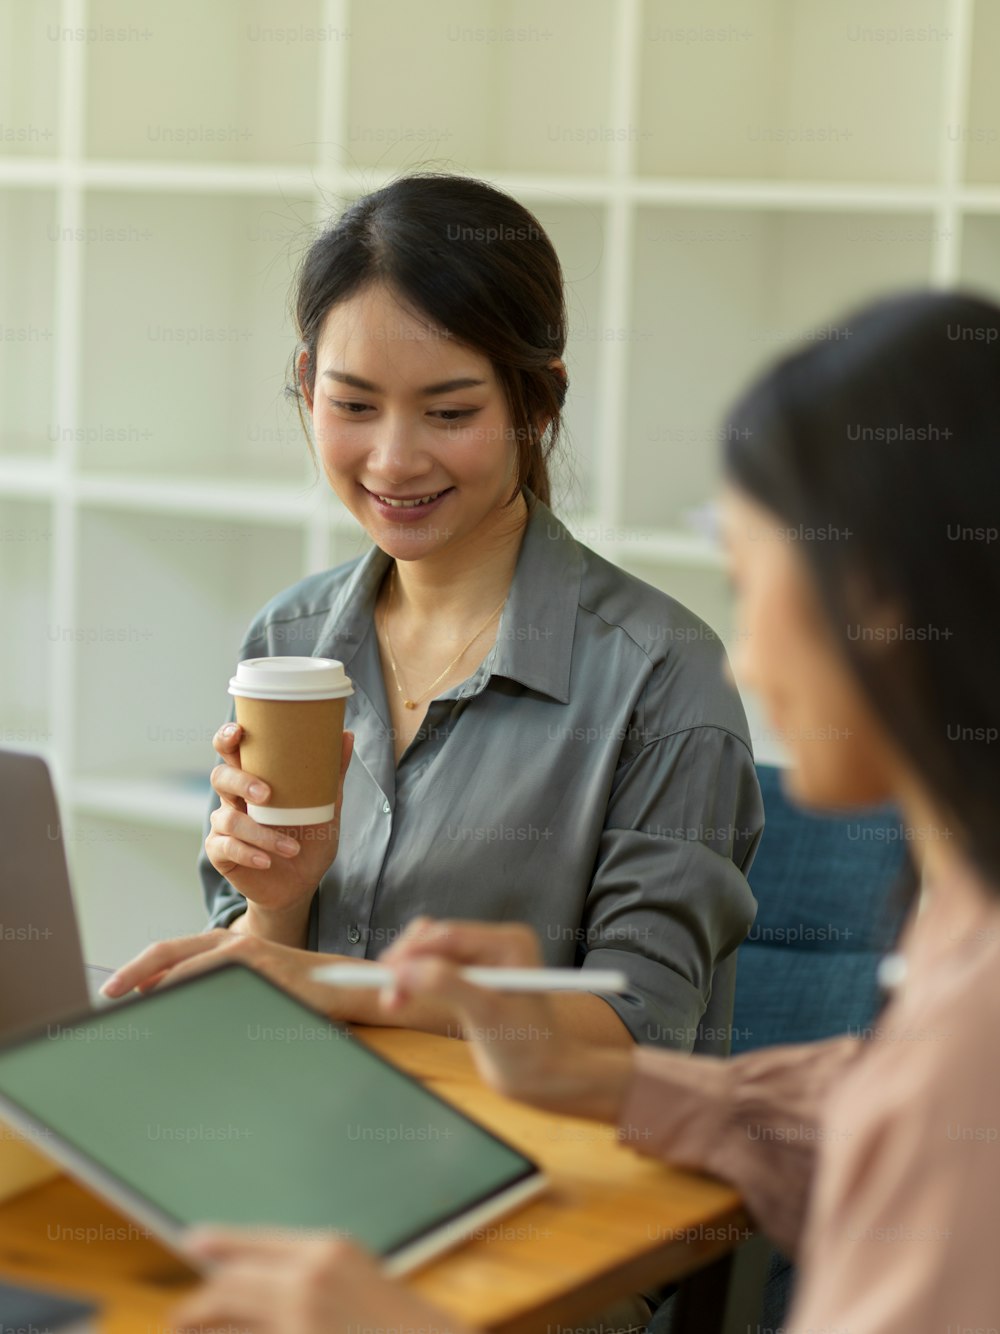 Retrato de una trabajadora sonriendo y sosteniendo un vaso de papel mientras escucha a su compañero de trabajo presentar su idea